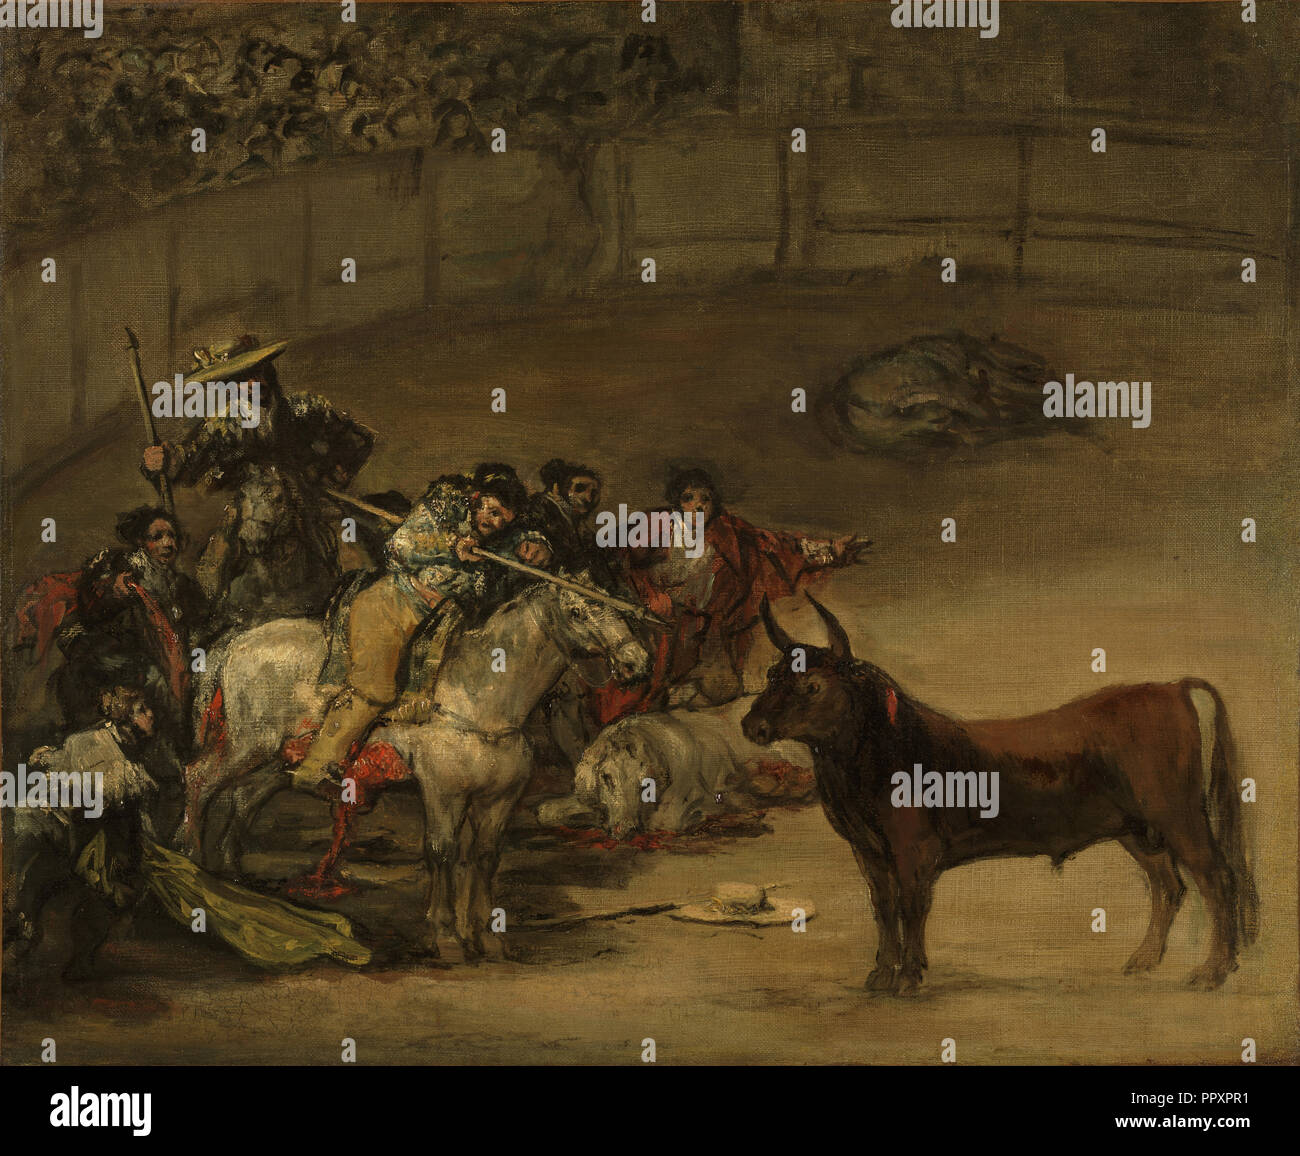 Corrida de toros, suerte de varas; Francisco José de Goya y Lucientes, Francisco de Goya, Español, 1746 - 1828, 1824; Óleo sobre lienzo Foto de stock